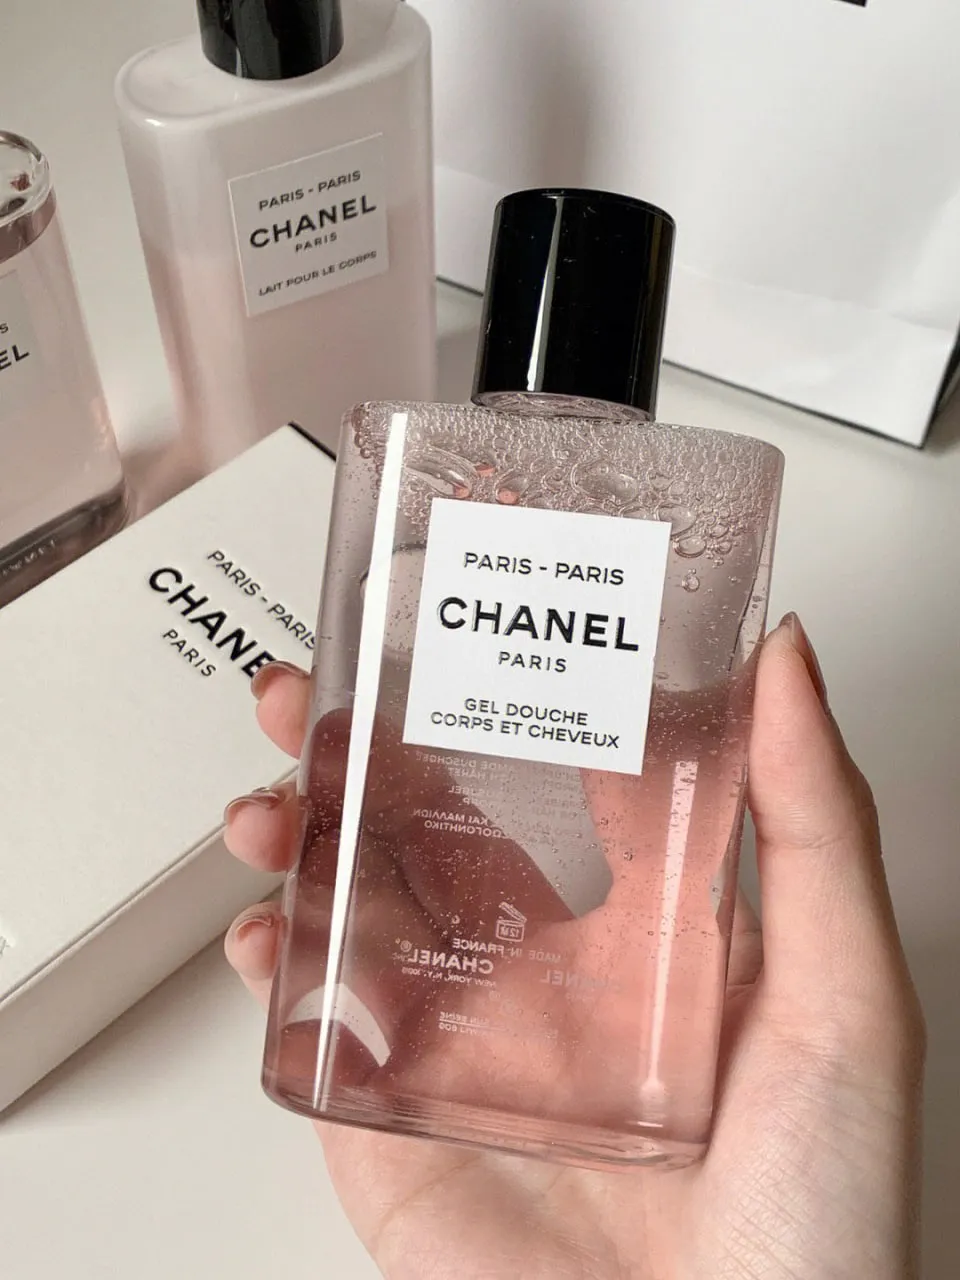 Chanel Paris, Shower Gel Product